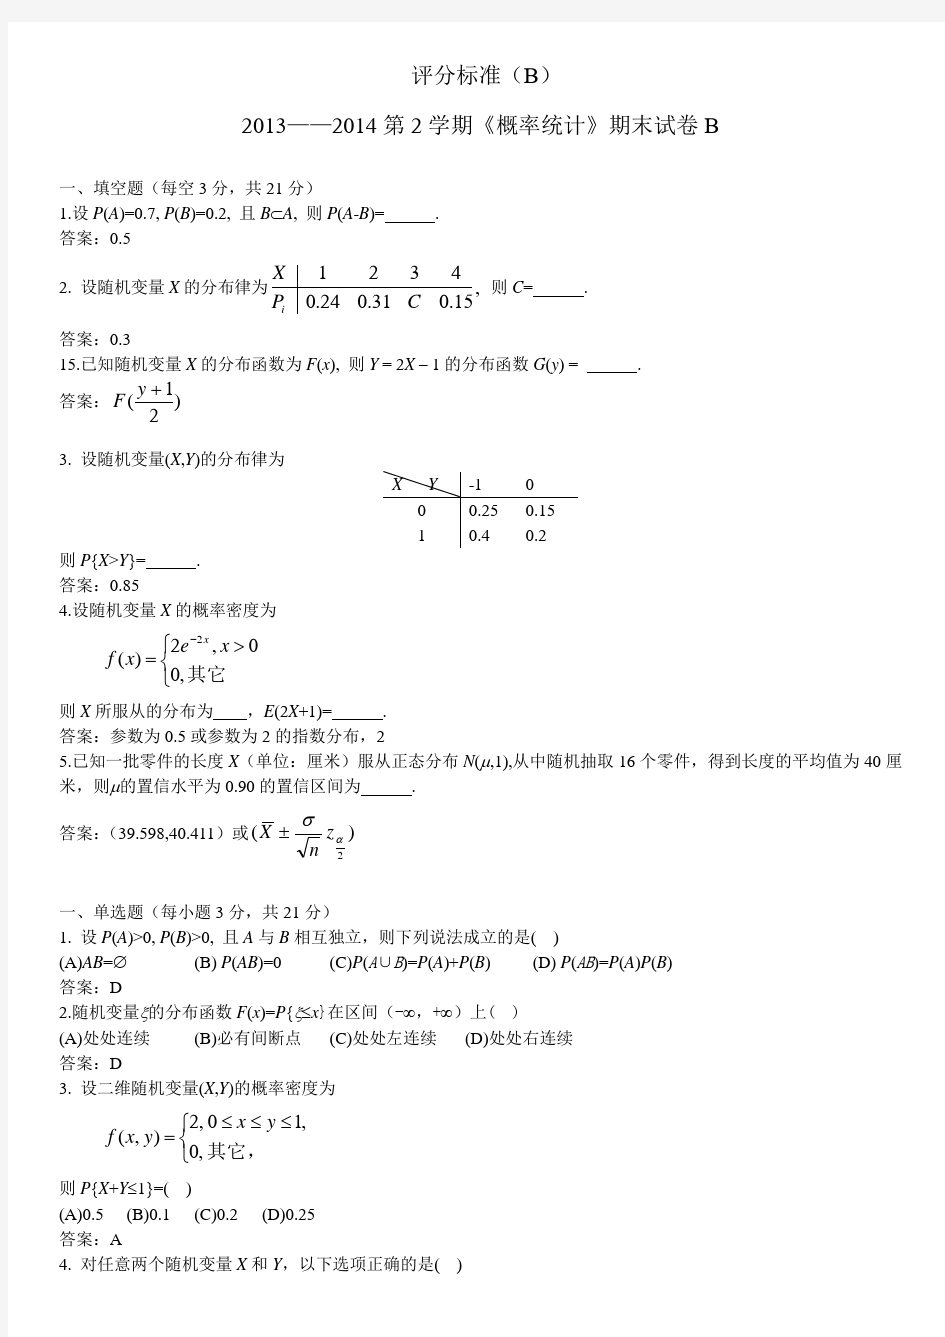 郑州轻工业学院概率论与数理统计(13-14第一学期)(B)